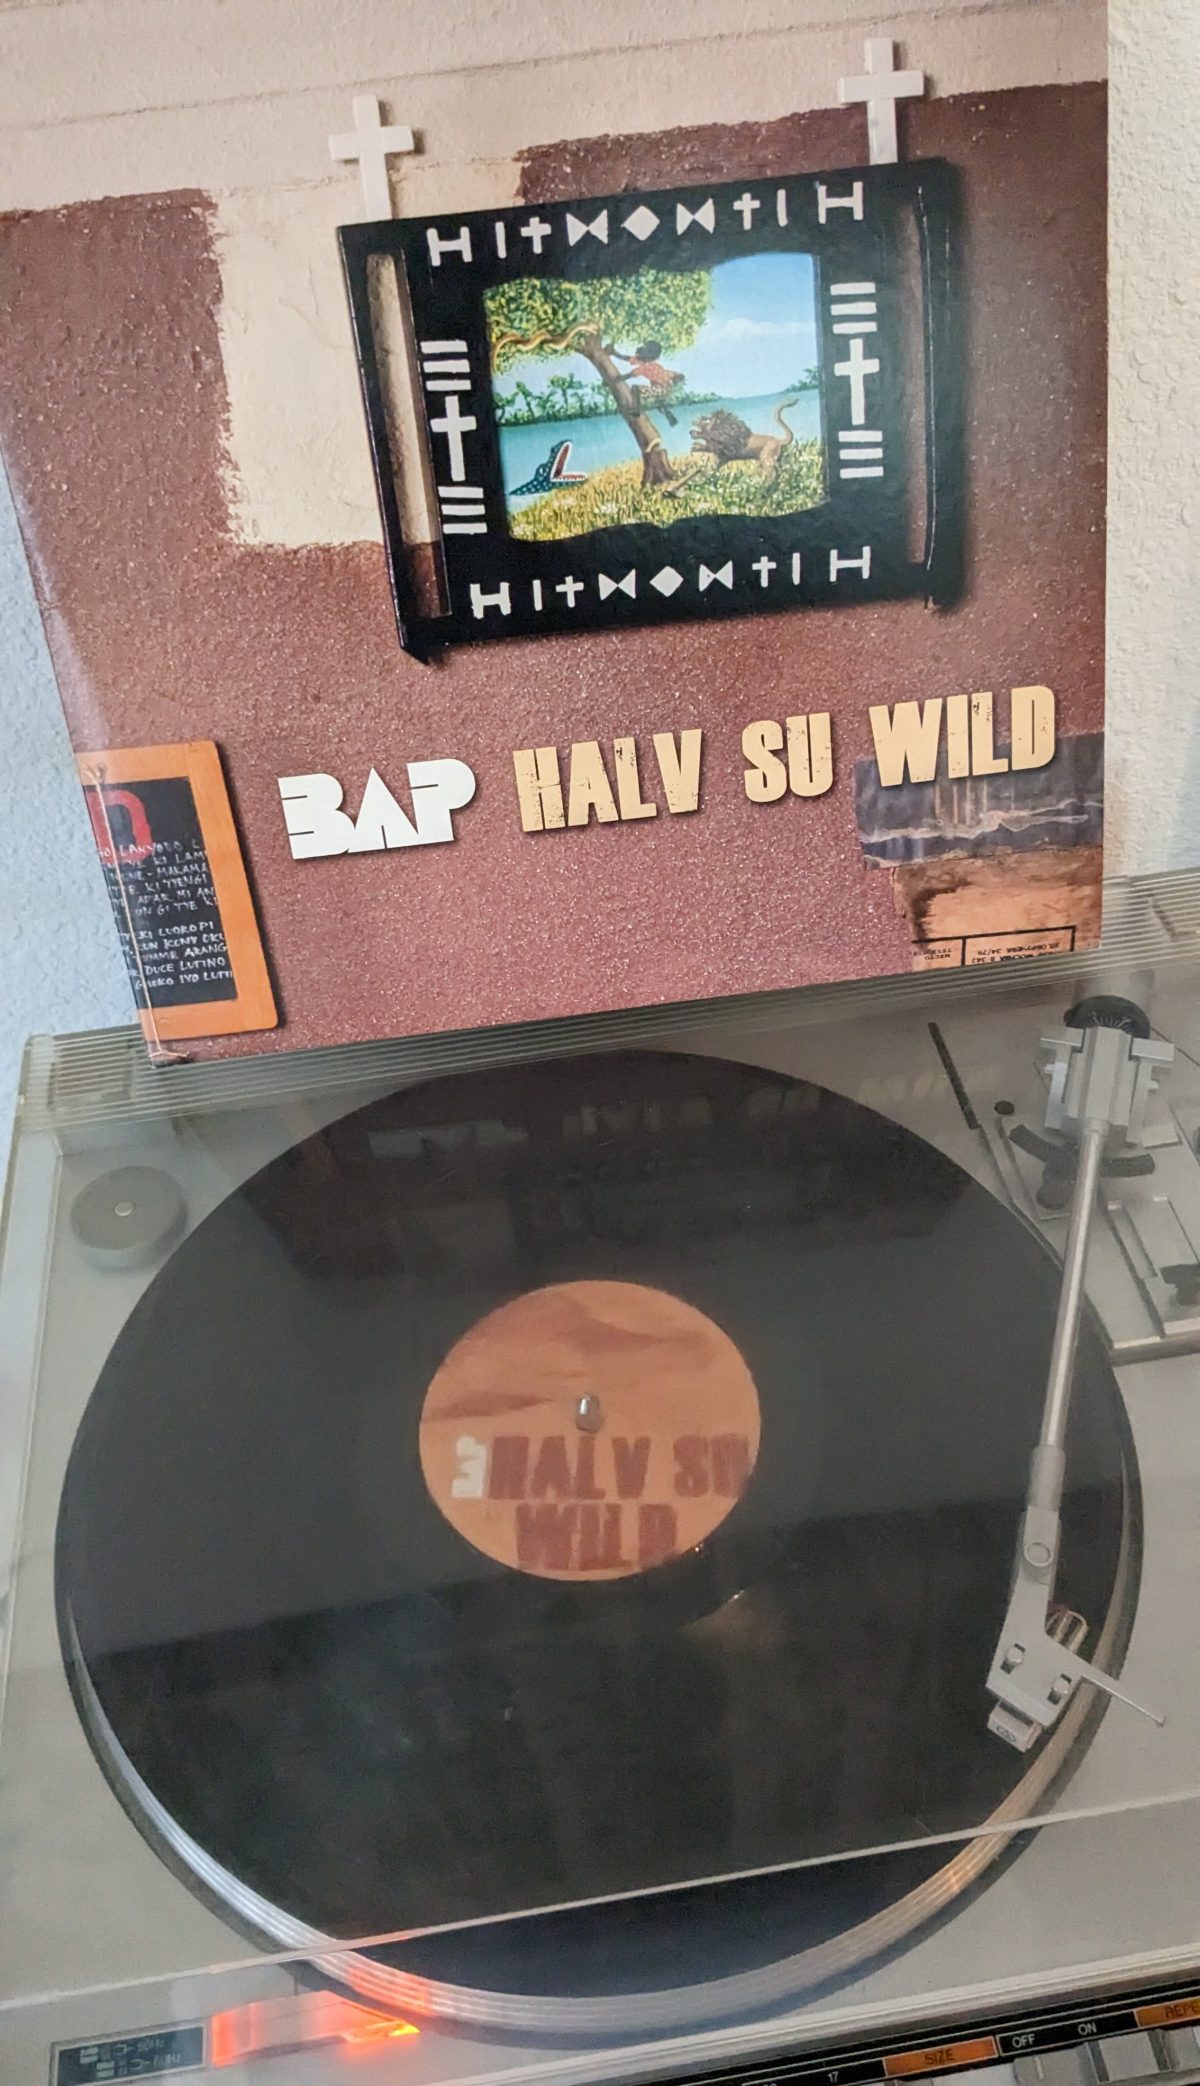 Das BAP-Albumcover "Halv su wild" mit Vinyl auf Plattenspieler